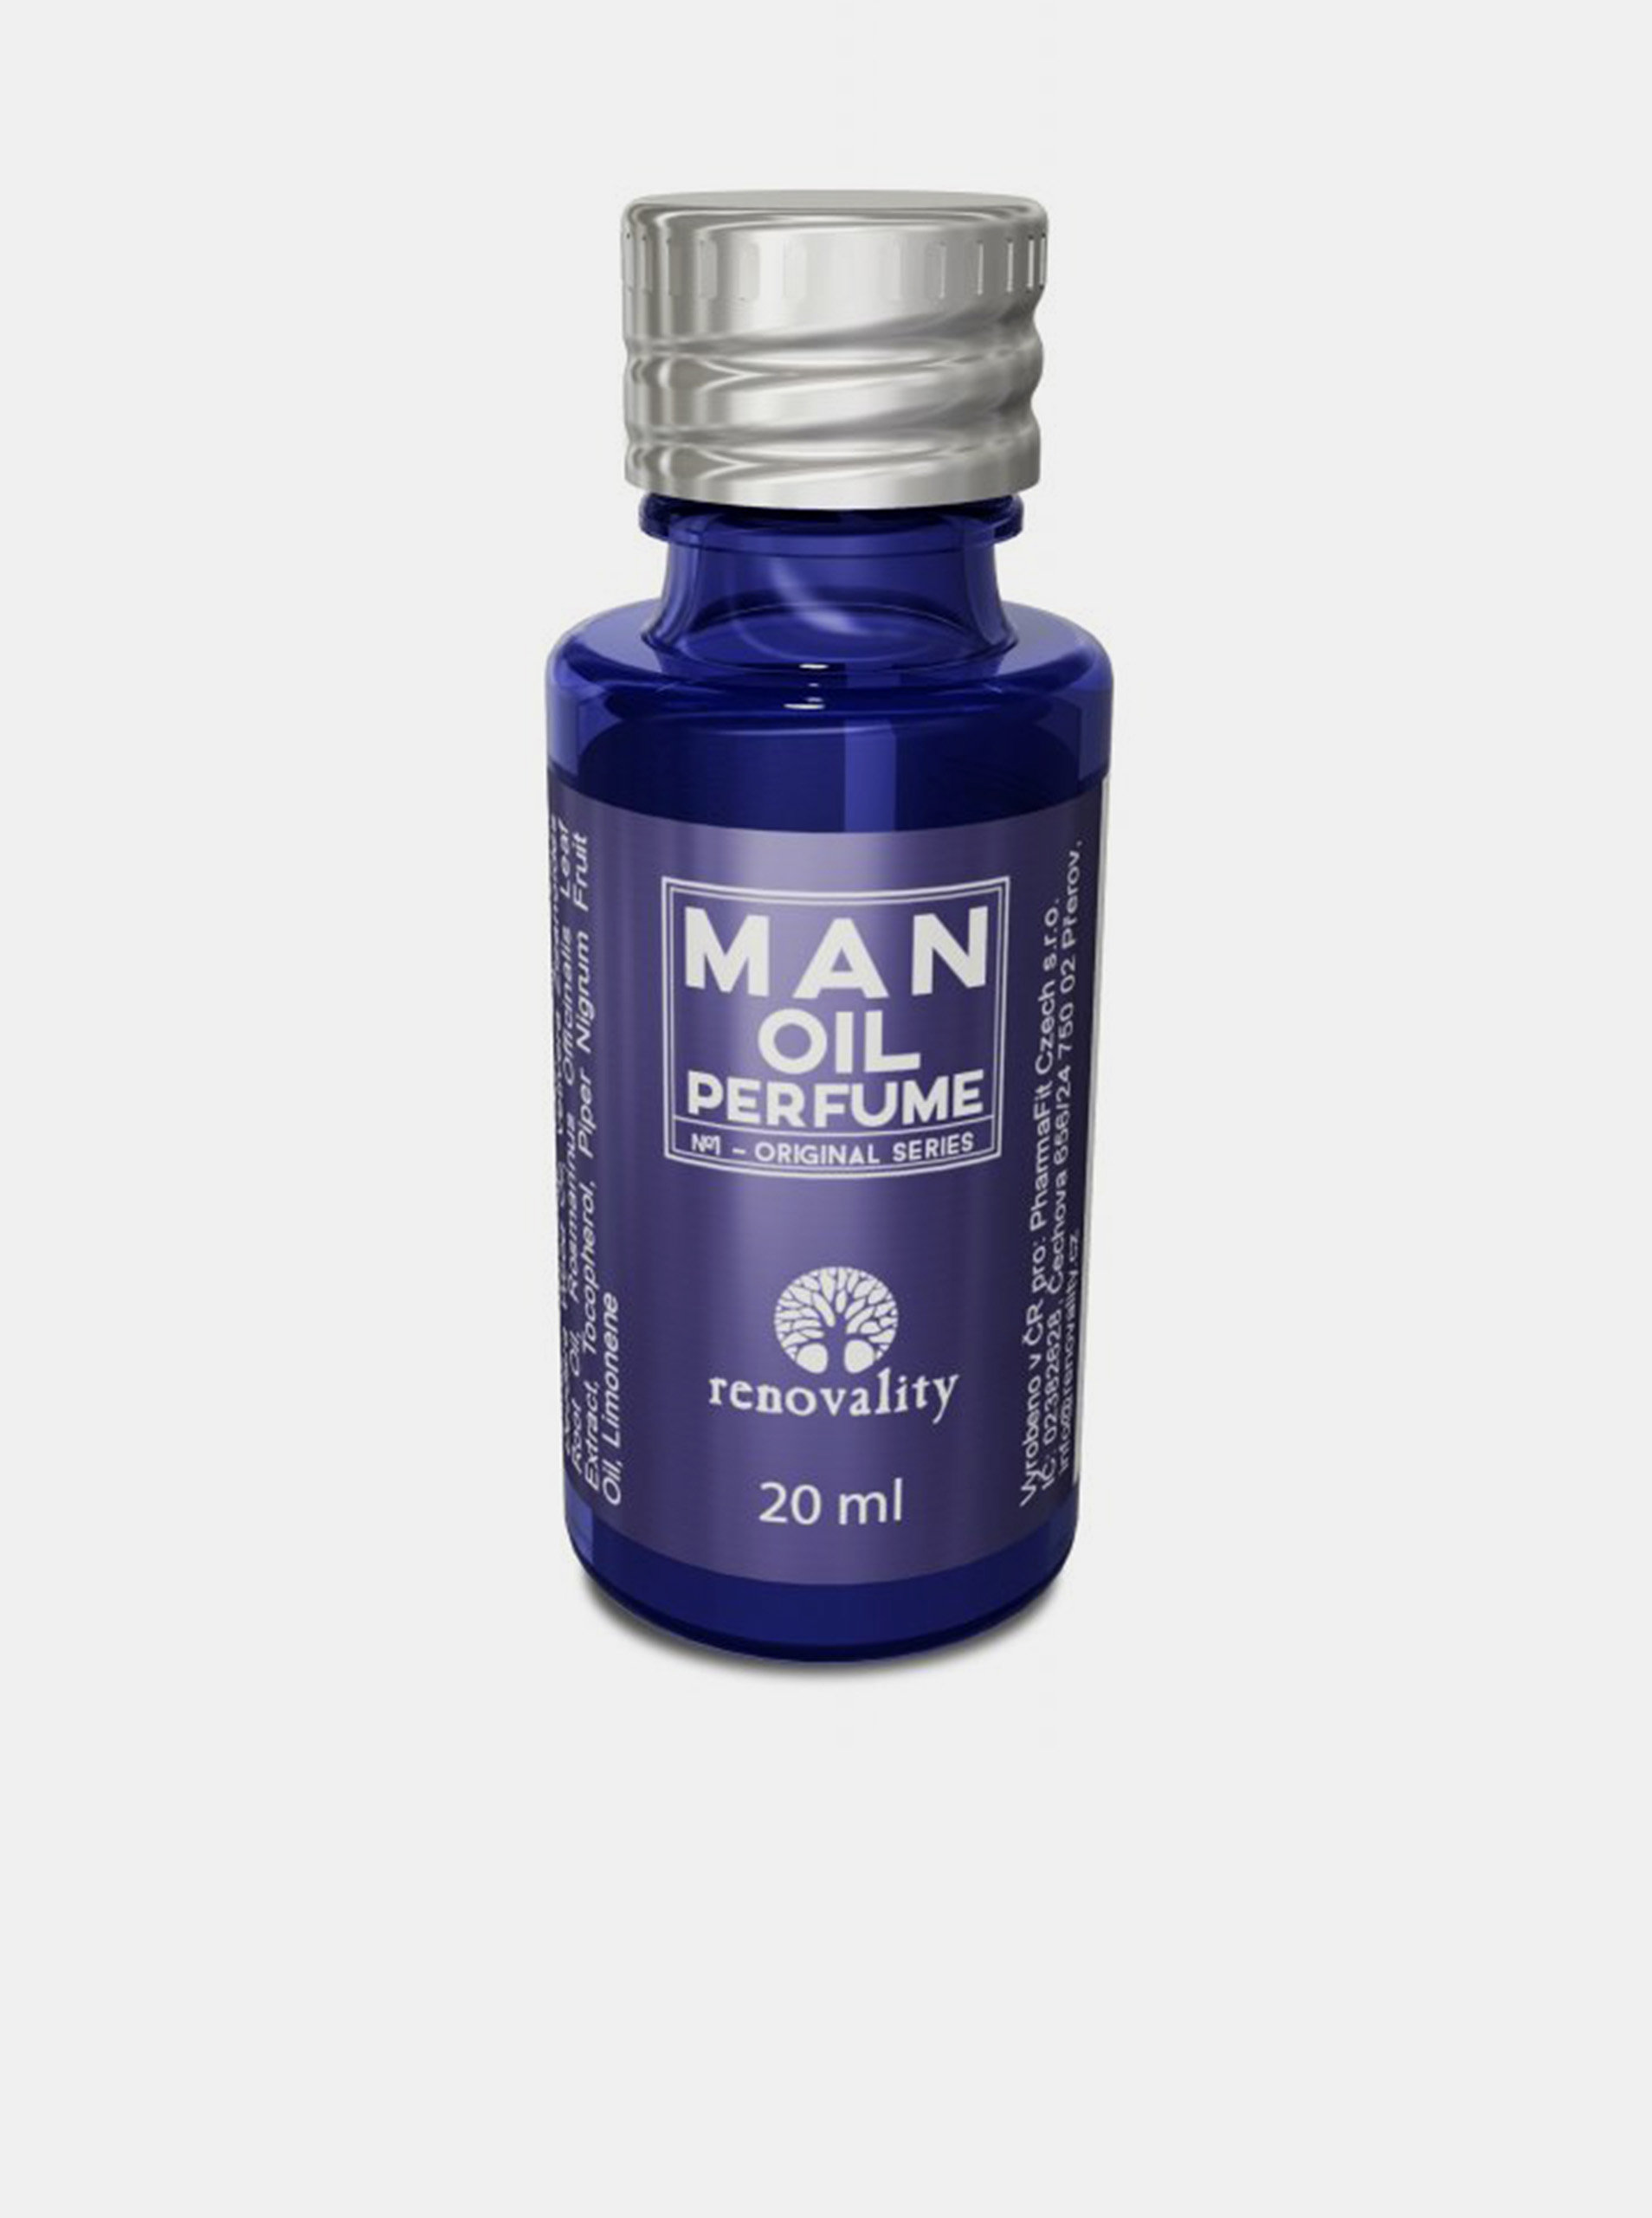 Pánský olejový parfém Man oil perfume RENOVALITY (20 ml)